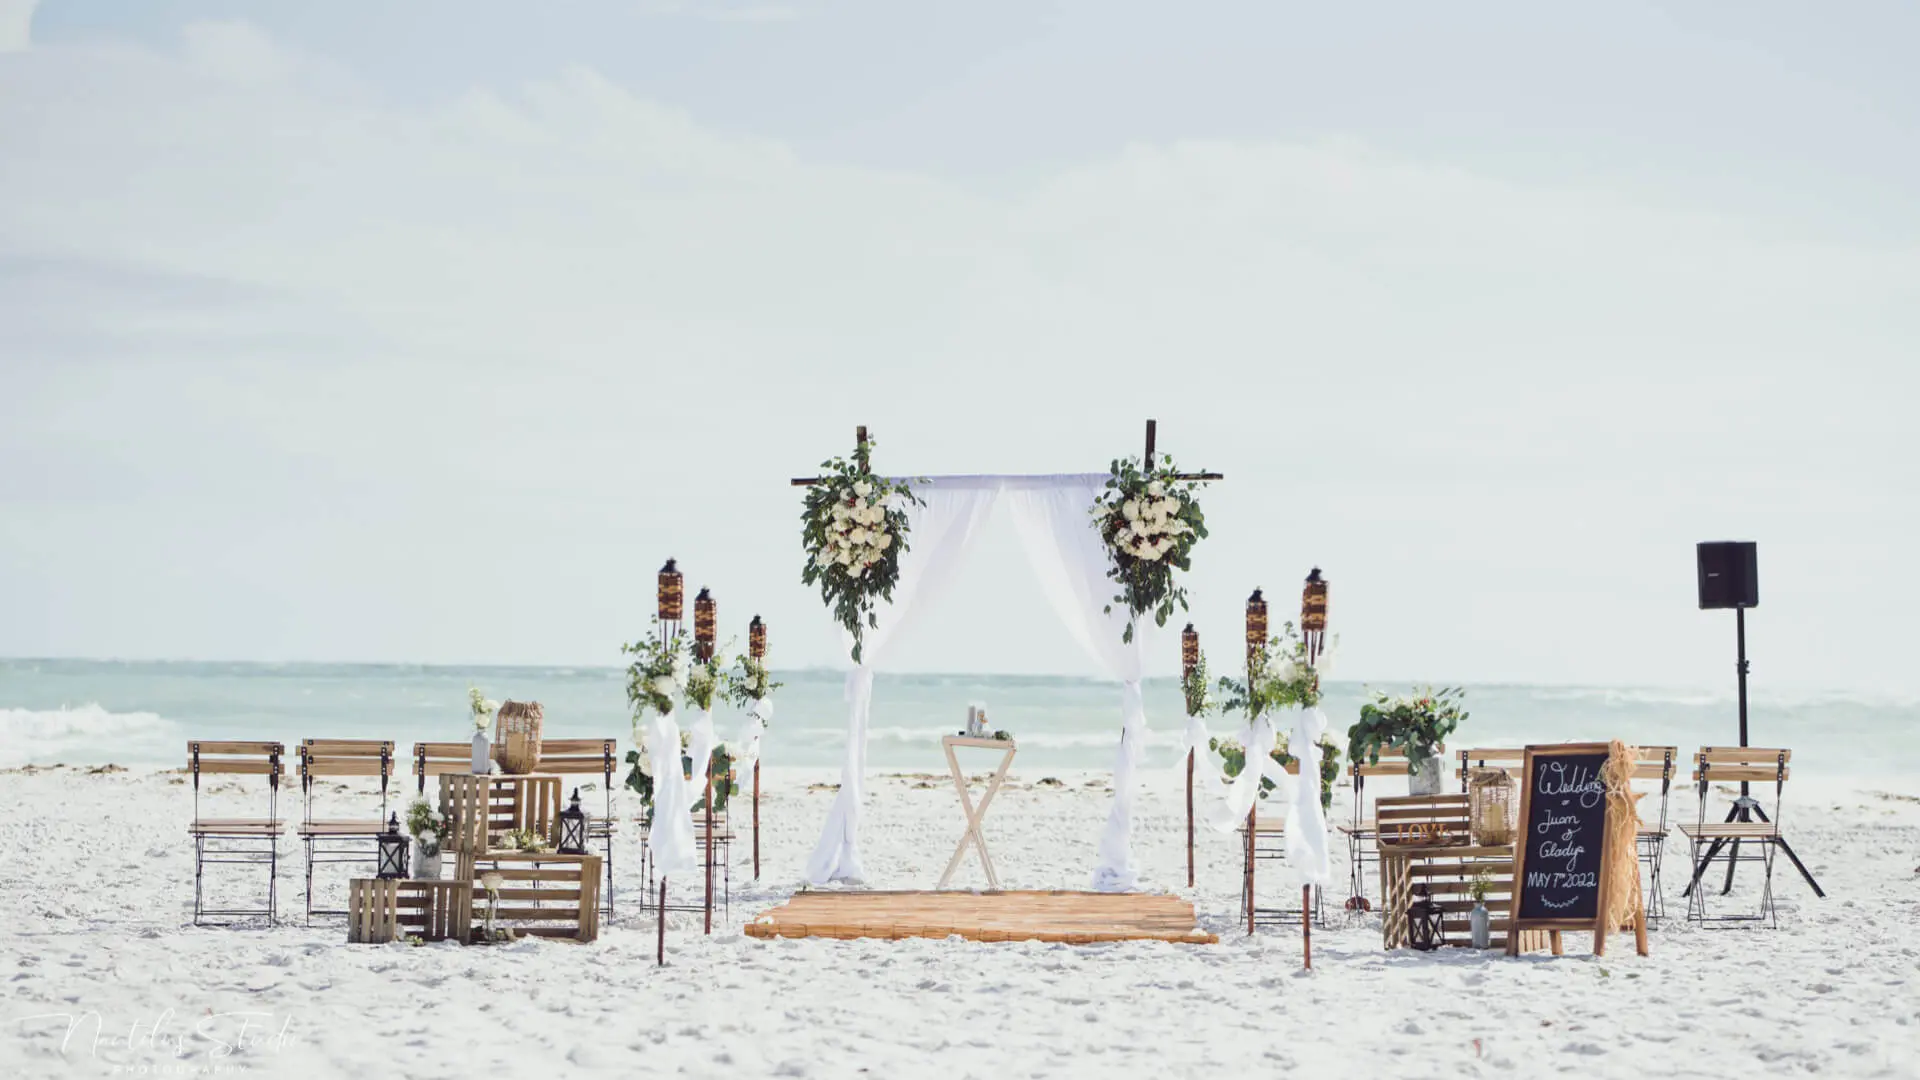 Estilo de vida y decoración vintage de bodas en la playa con flores frescas y sillas de campo francesas